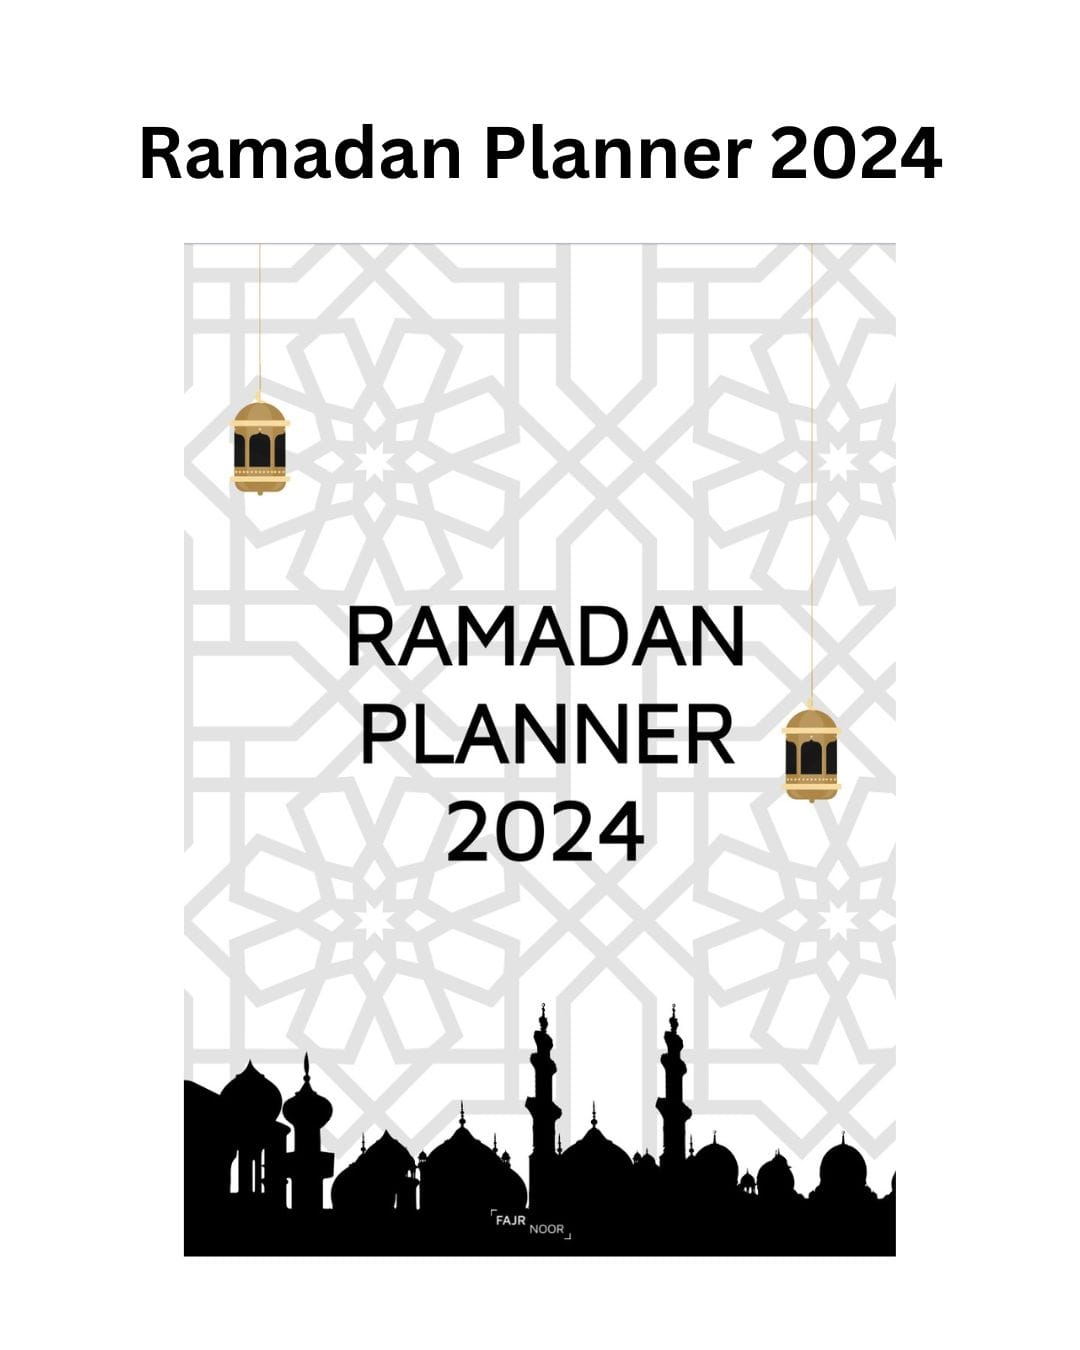 Digital Ramadan Planner 2024 - Ramadan Planner - Fajr Noor